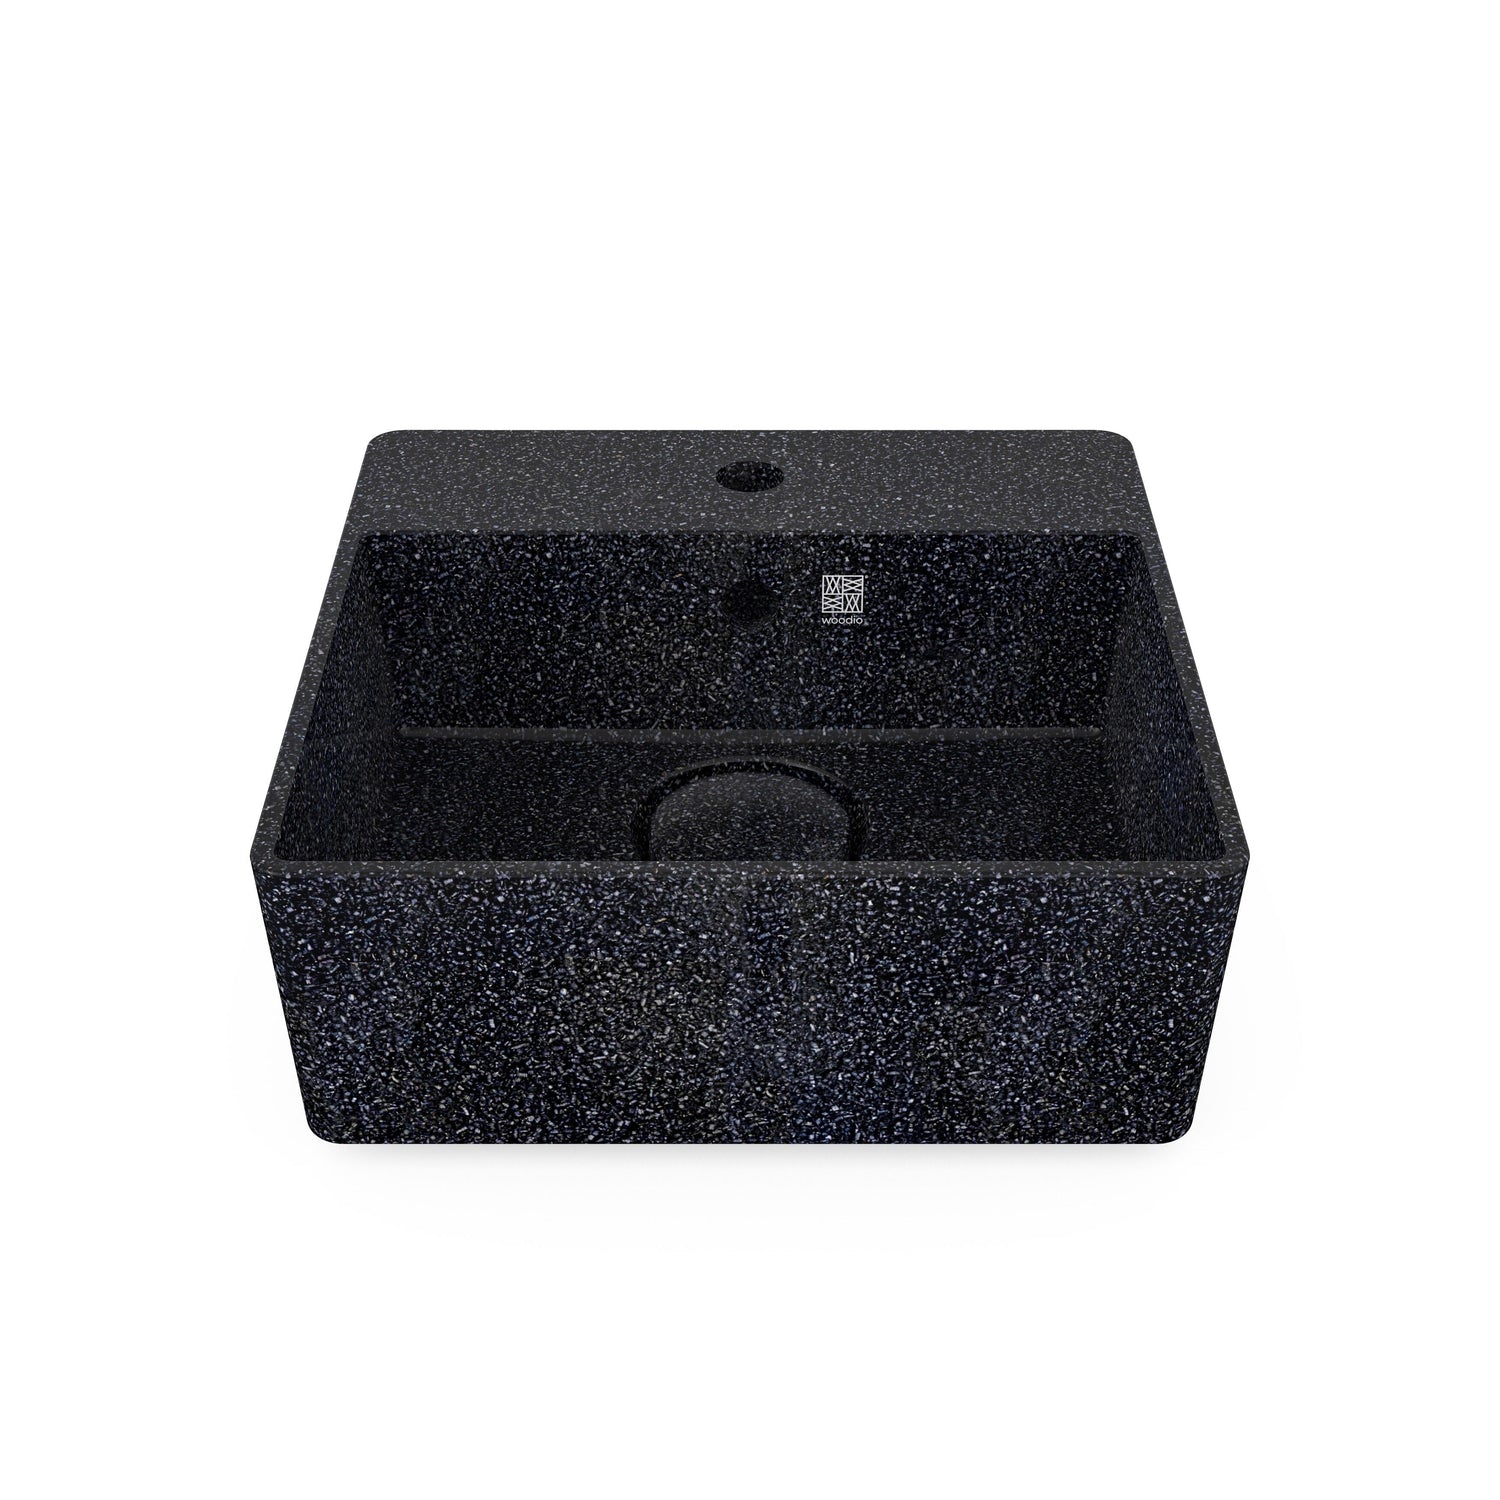 Aufsatzwaschbecken Cube40 (mit Hahnloch) von Woodio edel weiss